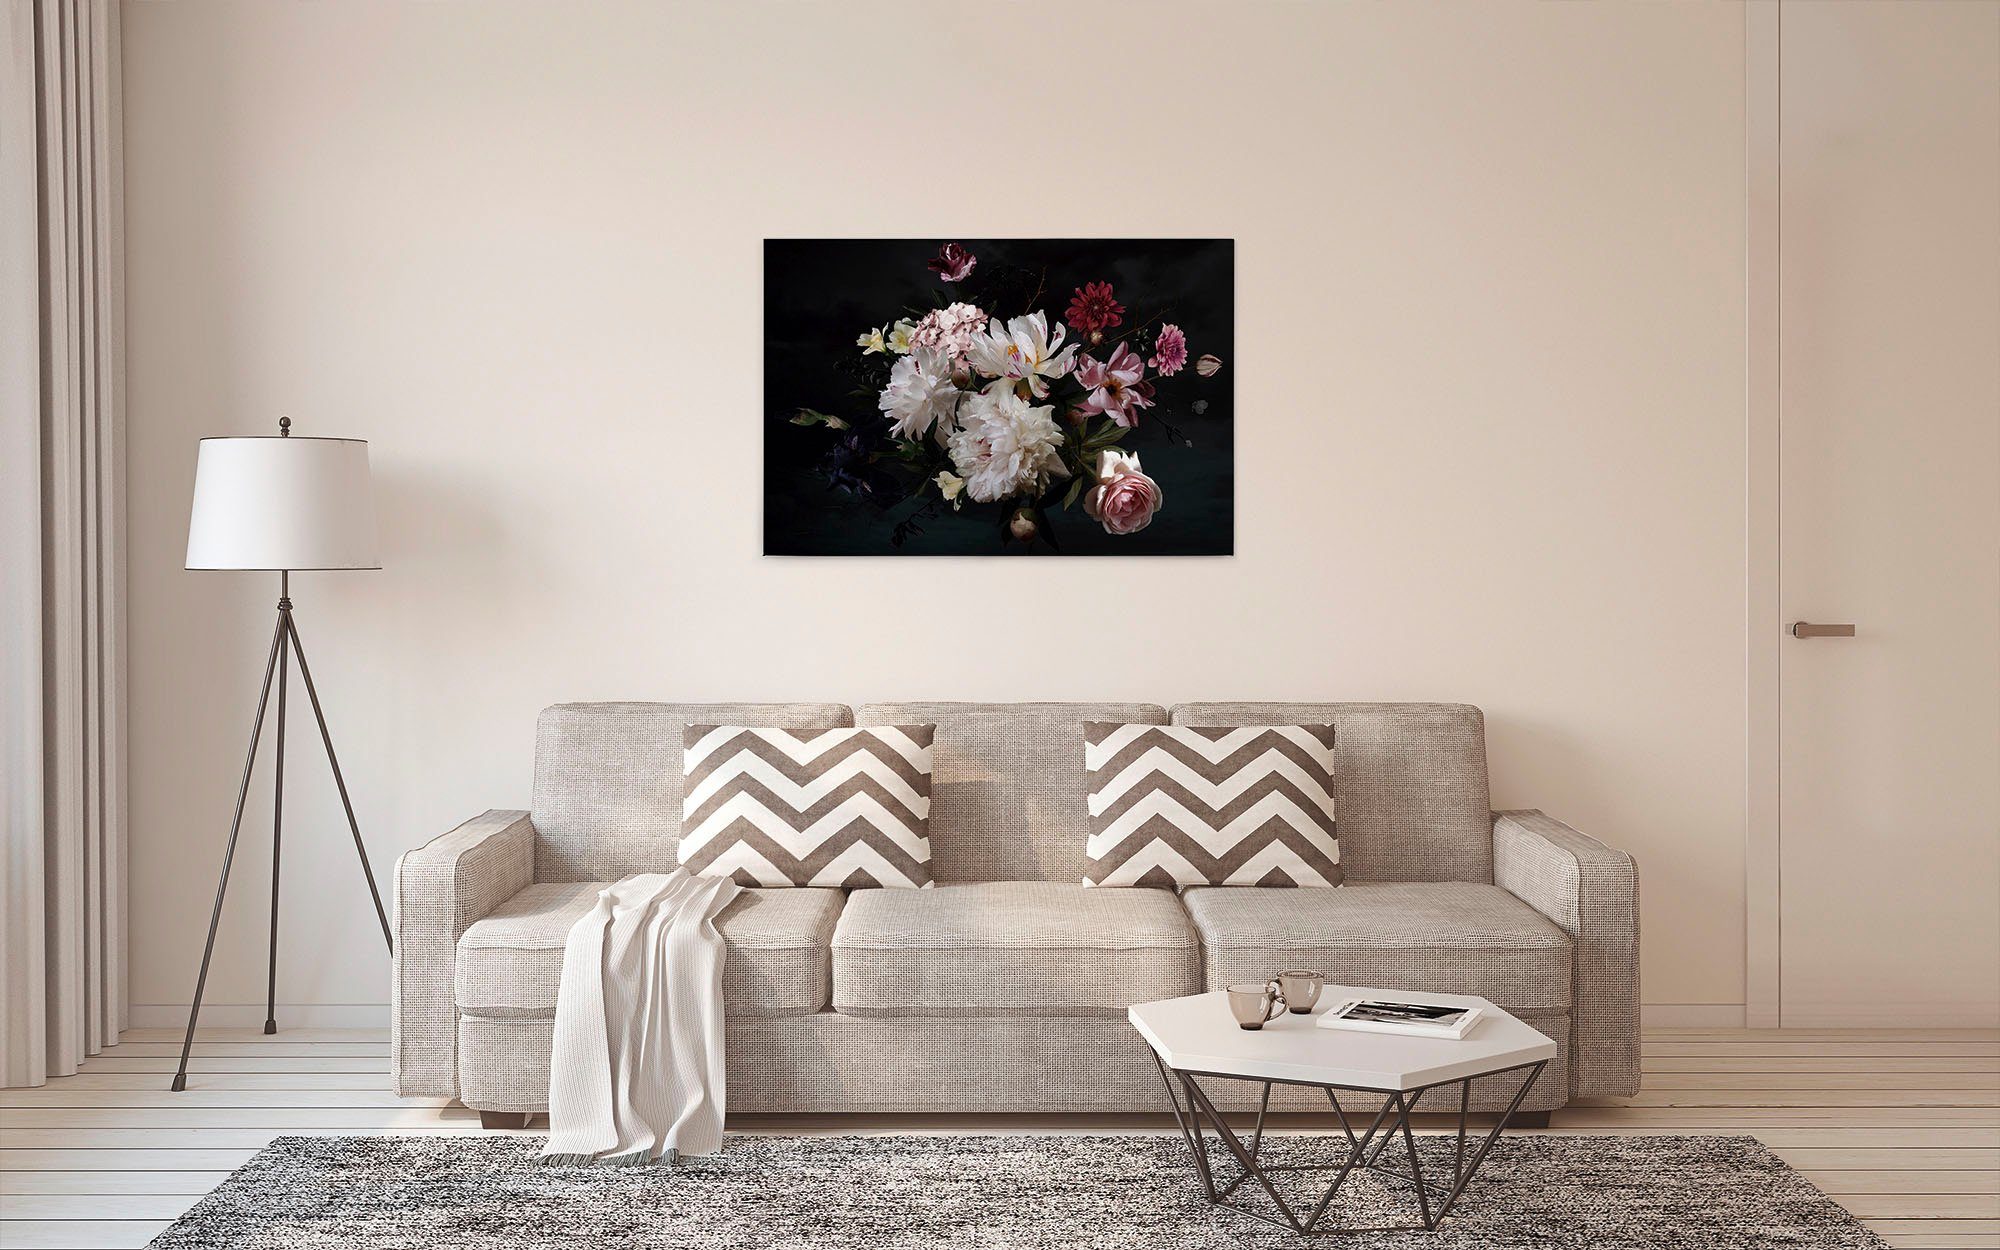 Of Blumen, Création St), Blunch Rosen A.S. rosa (1 Flowers, weiß, Blumen Bild Leinwandbild schwarz, Keilrahmen Romantische